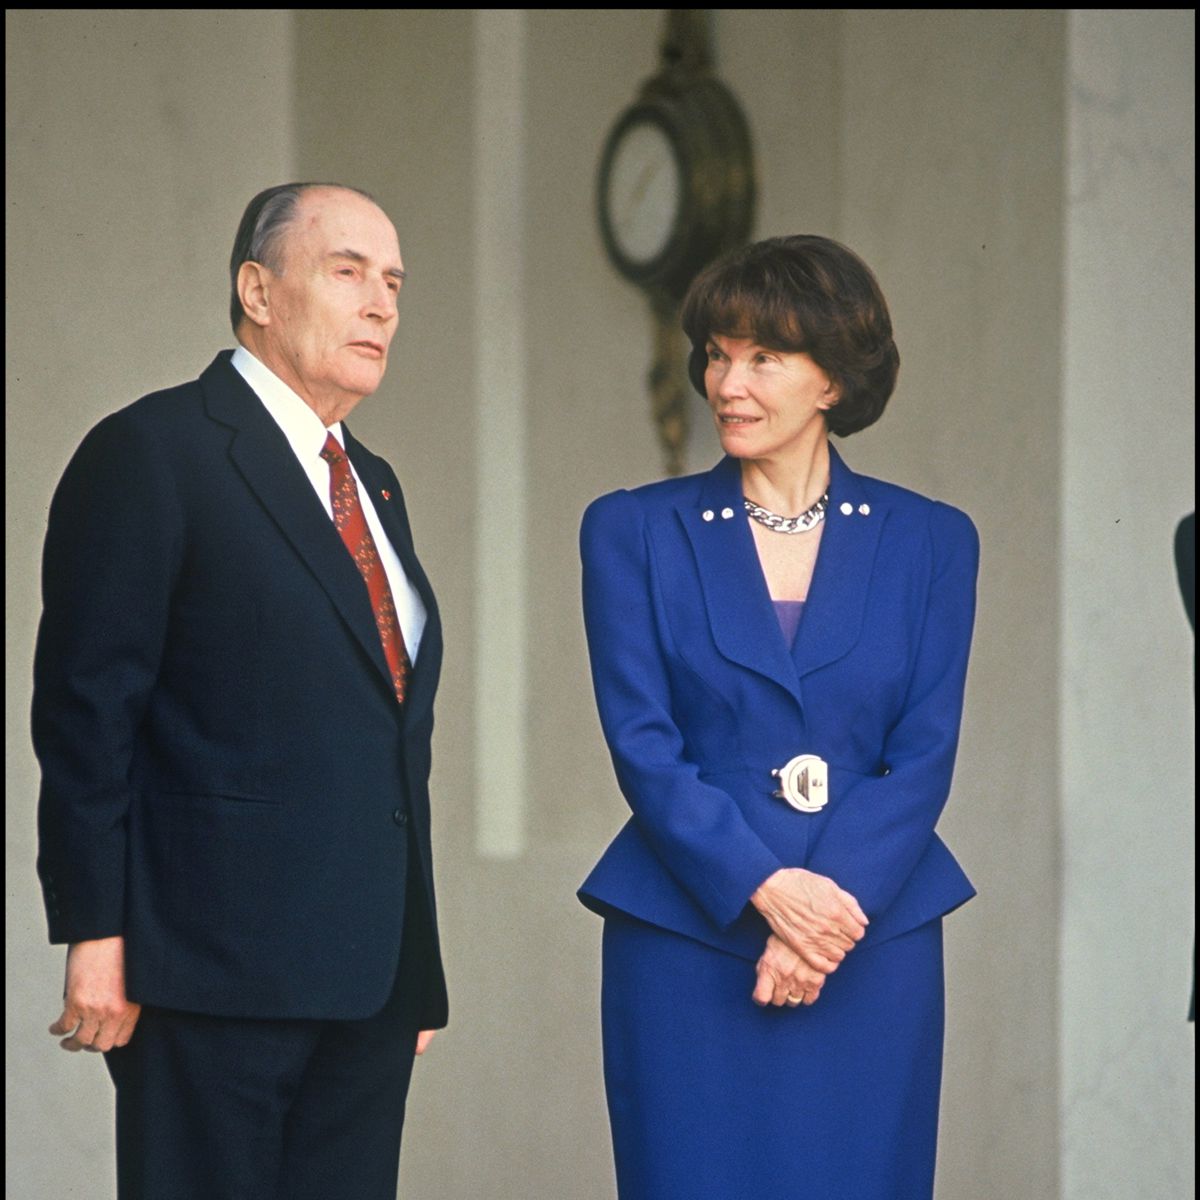 François et Danielle Mitterand à l’Élysée en 1992.